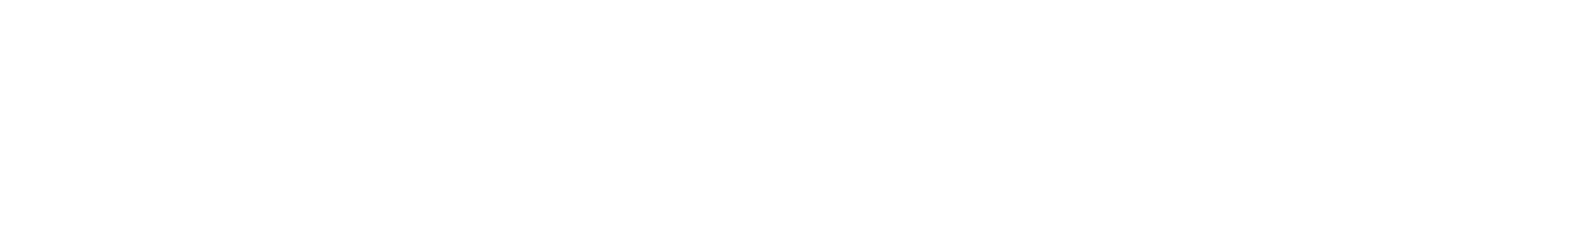 iRadimed logo large for dark backgrounds (transparent PNG)